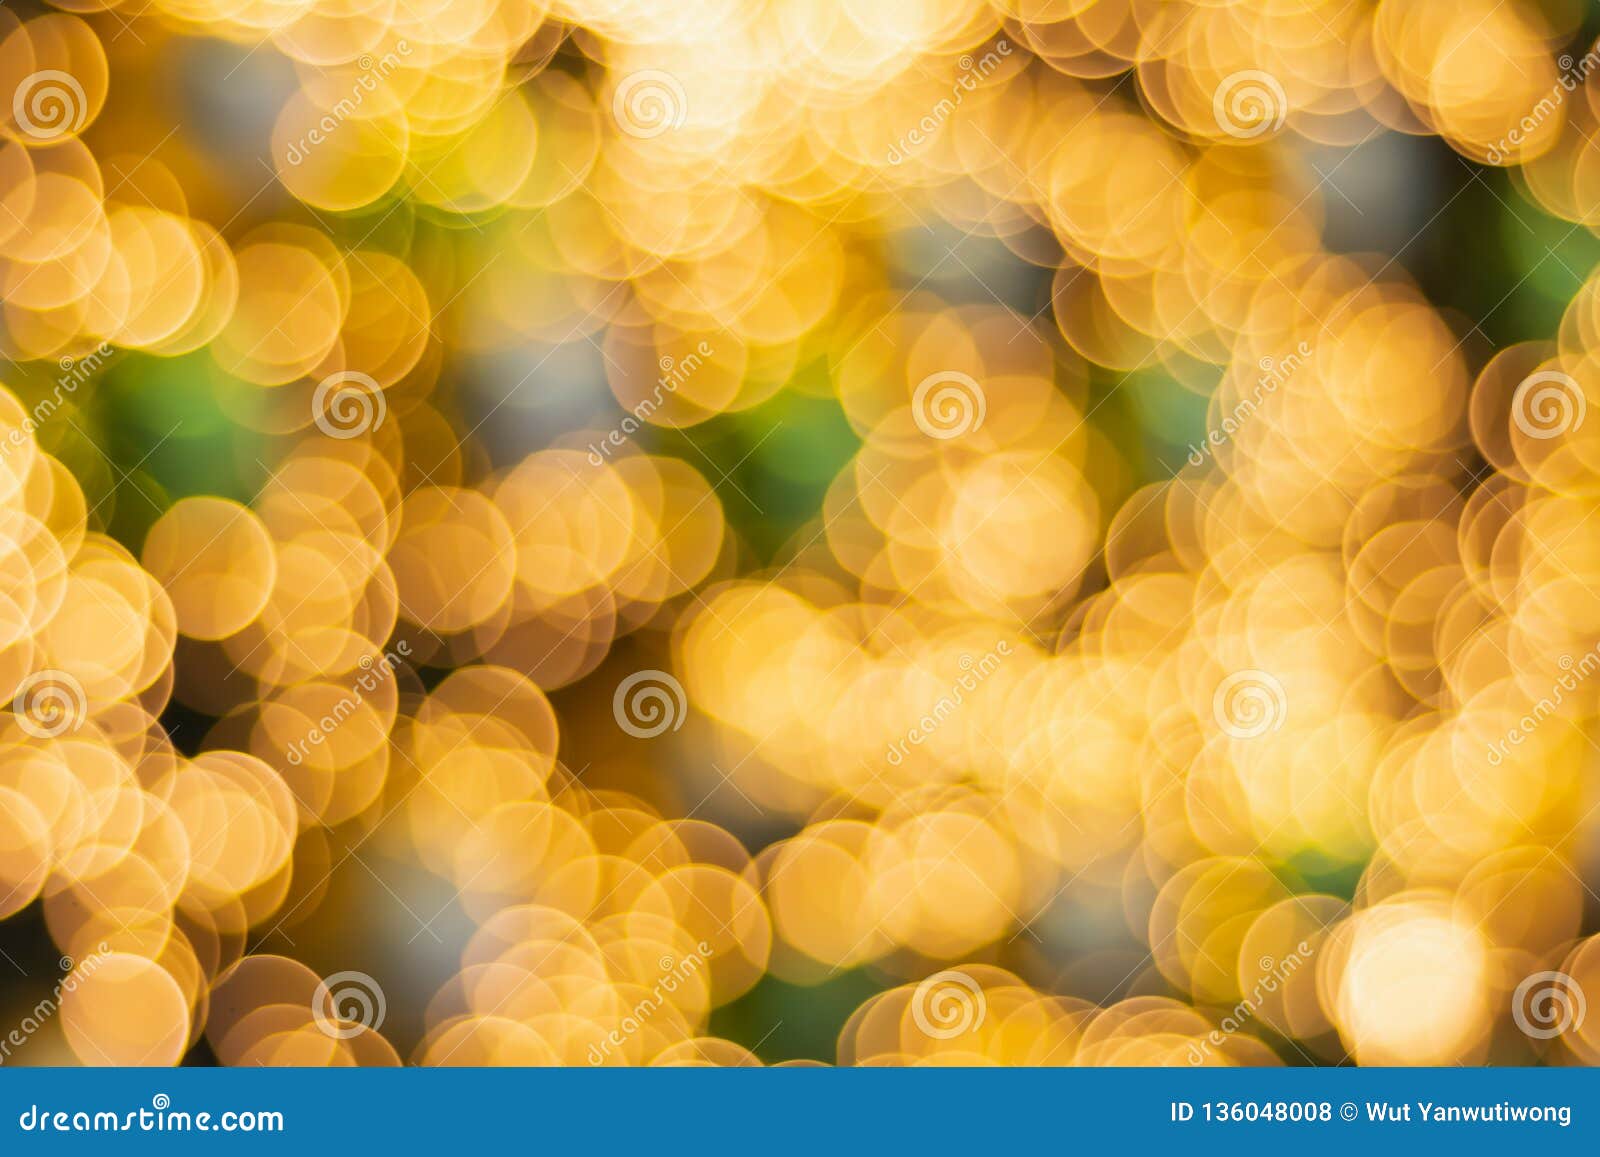 Nền bokeh màu cam, vàng và xanh lá cây: Sự kết hợp của ba màu sắc tươi sáng và hoàn hảo nhất đã tạo nên một nền bokeh đầy mê hoặc, đưa người xem vào không gian đẹp tuyệt vời. Cùng khám phá và trải nghiệm ngay nhé!